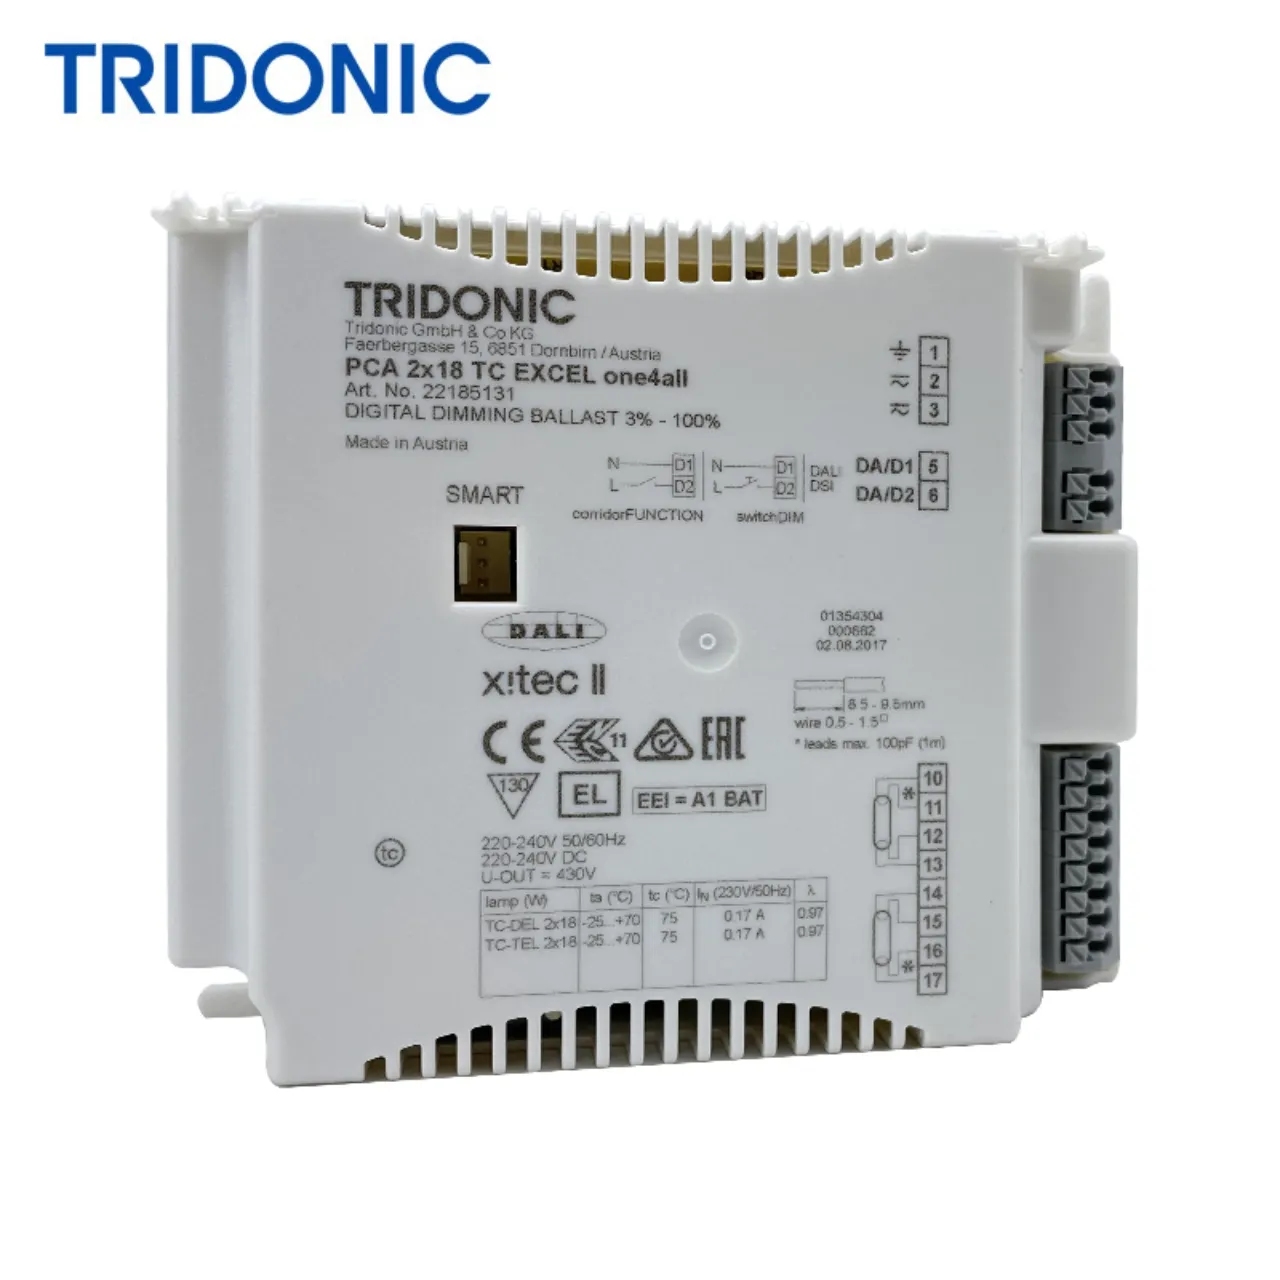 Tridonic led sürücü IP67 LCI 30W 700mA M120 kompakt sabit çıkış sabit akım LED sürücü için dış mekan kullanımı için LED modülü